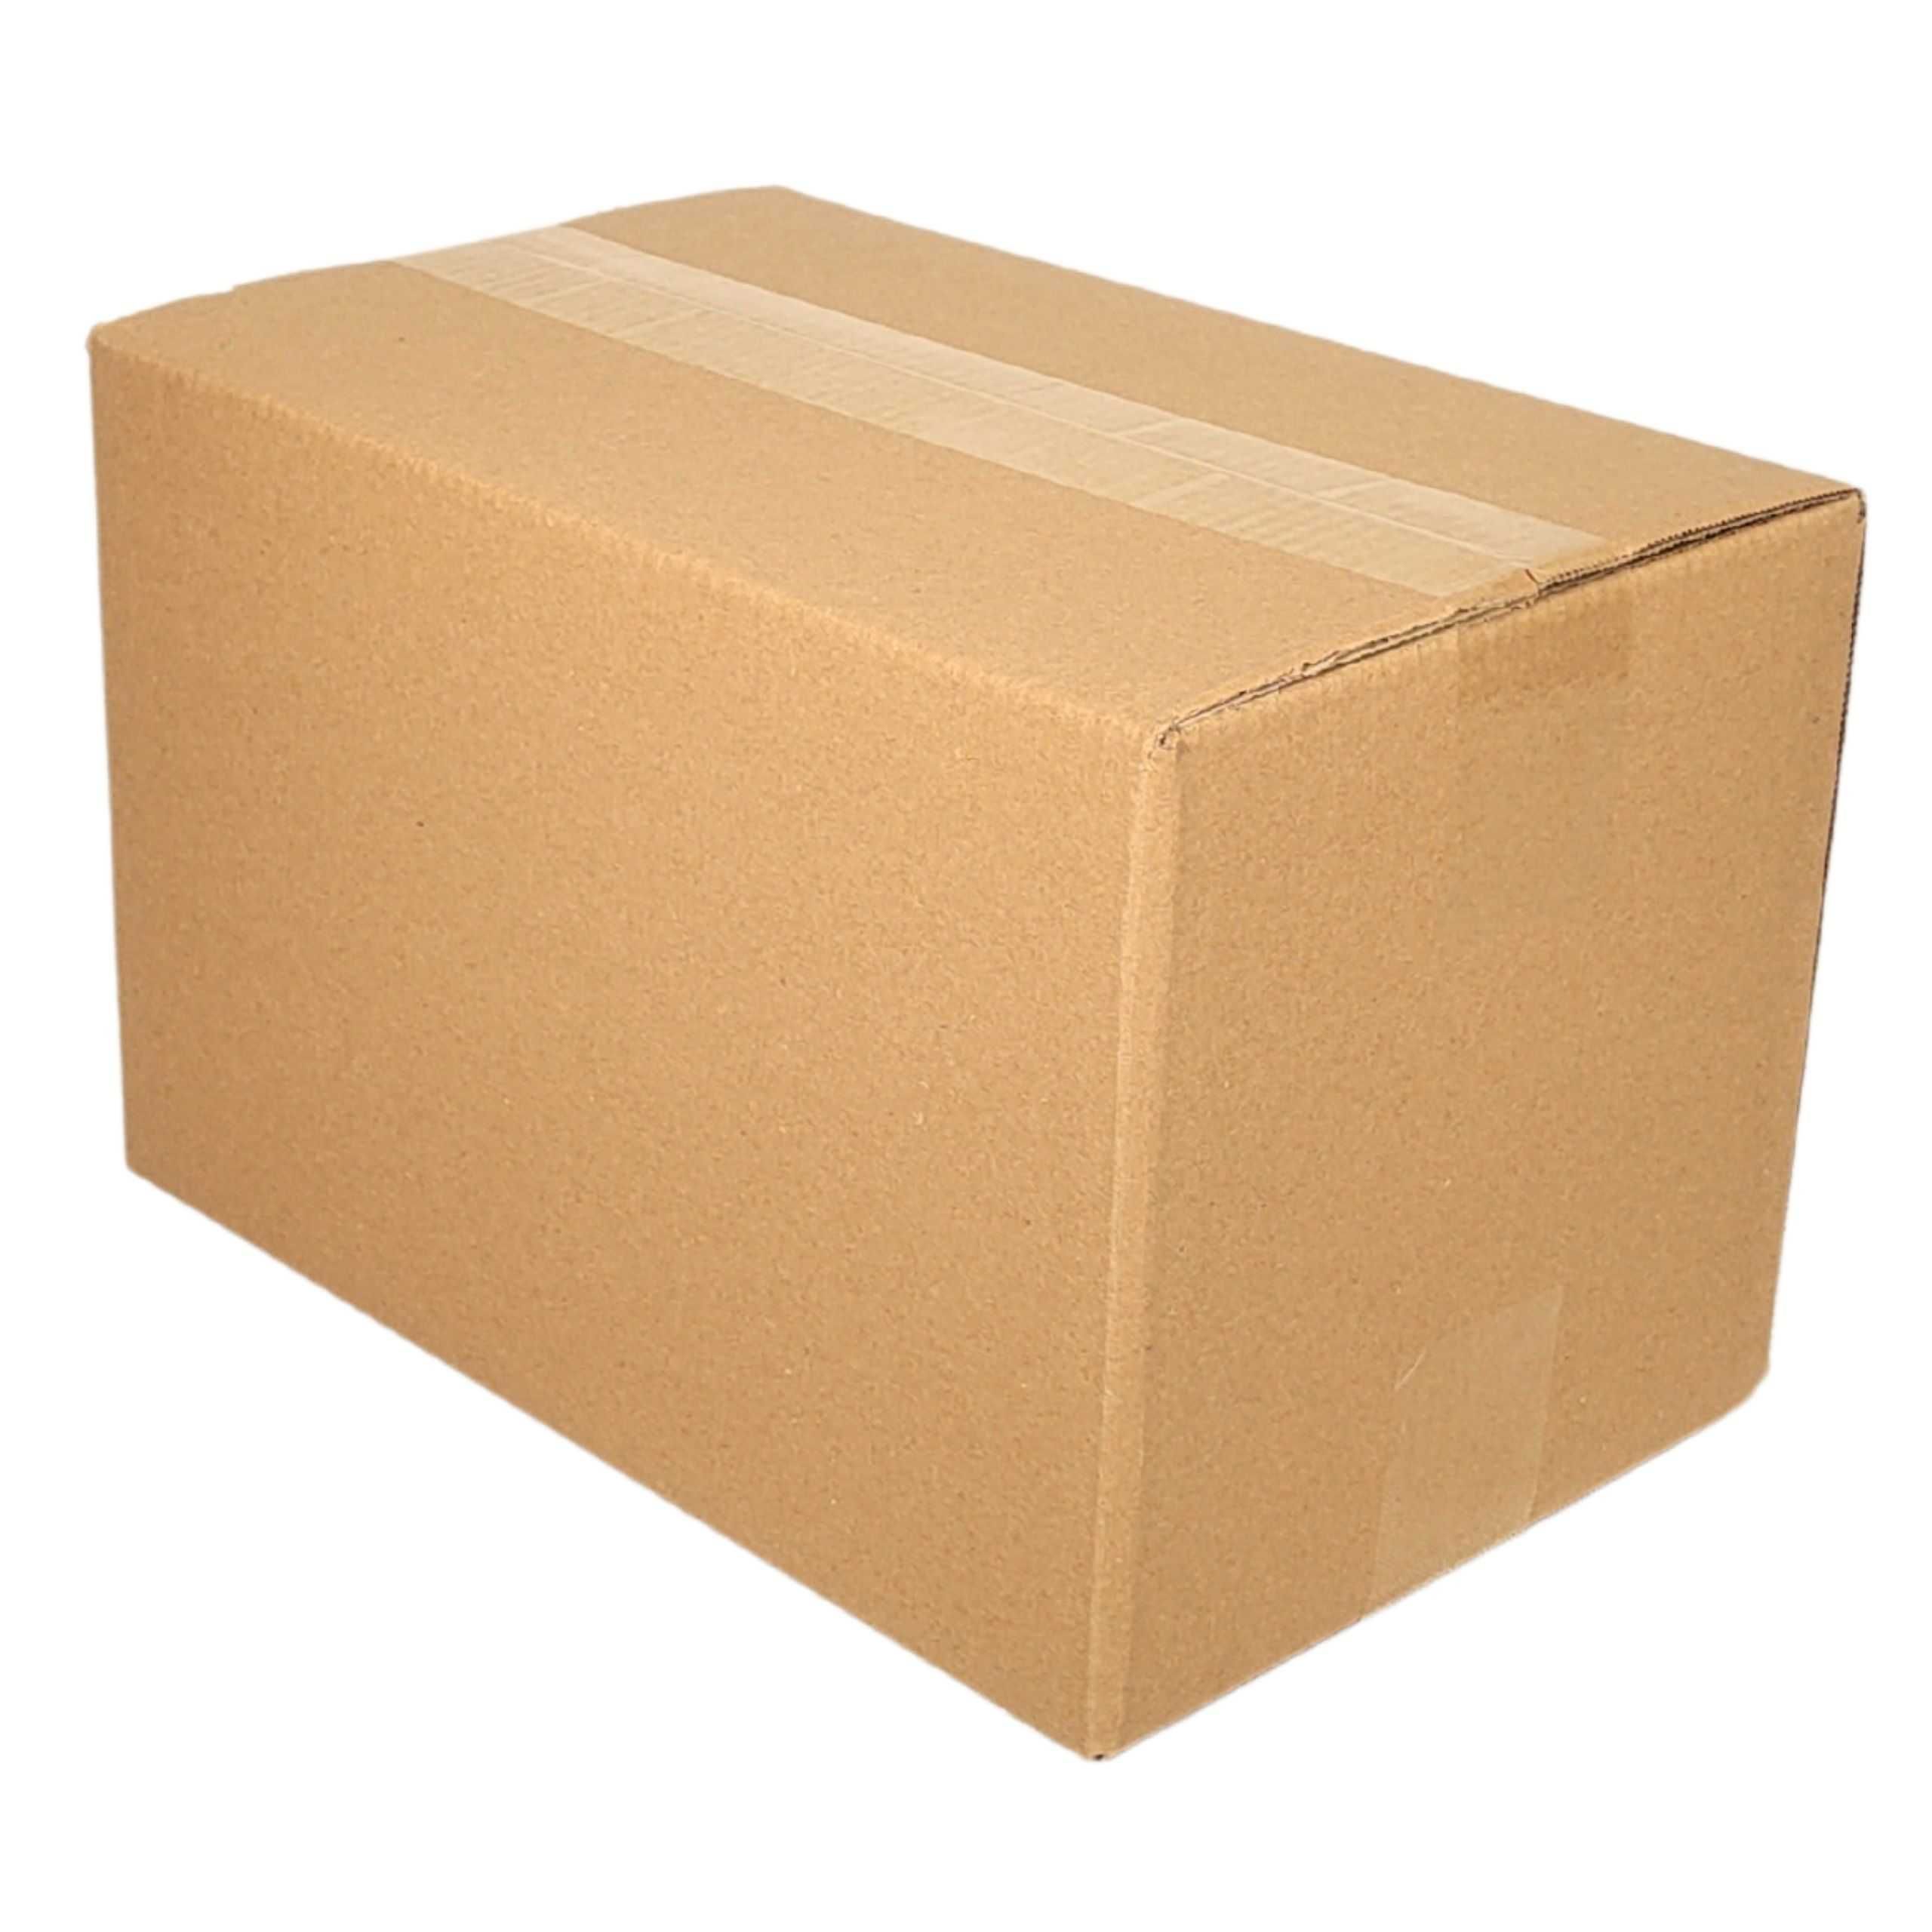 Pudełka Kartony Wysyłkowe Paczkomat A B C Orlen Paczka Allegro One Box